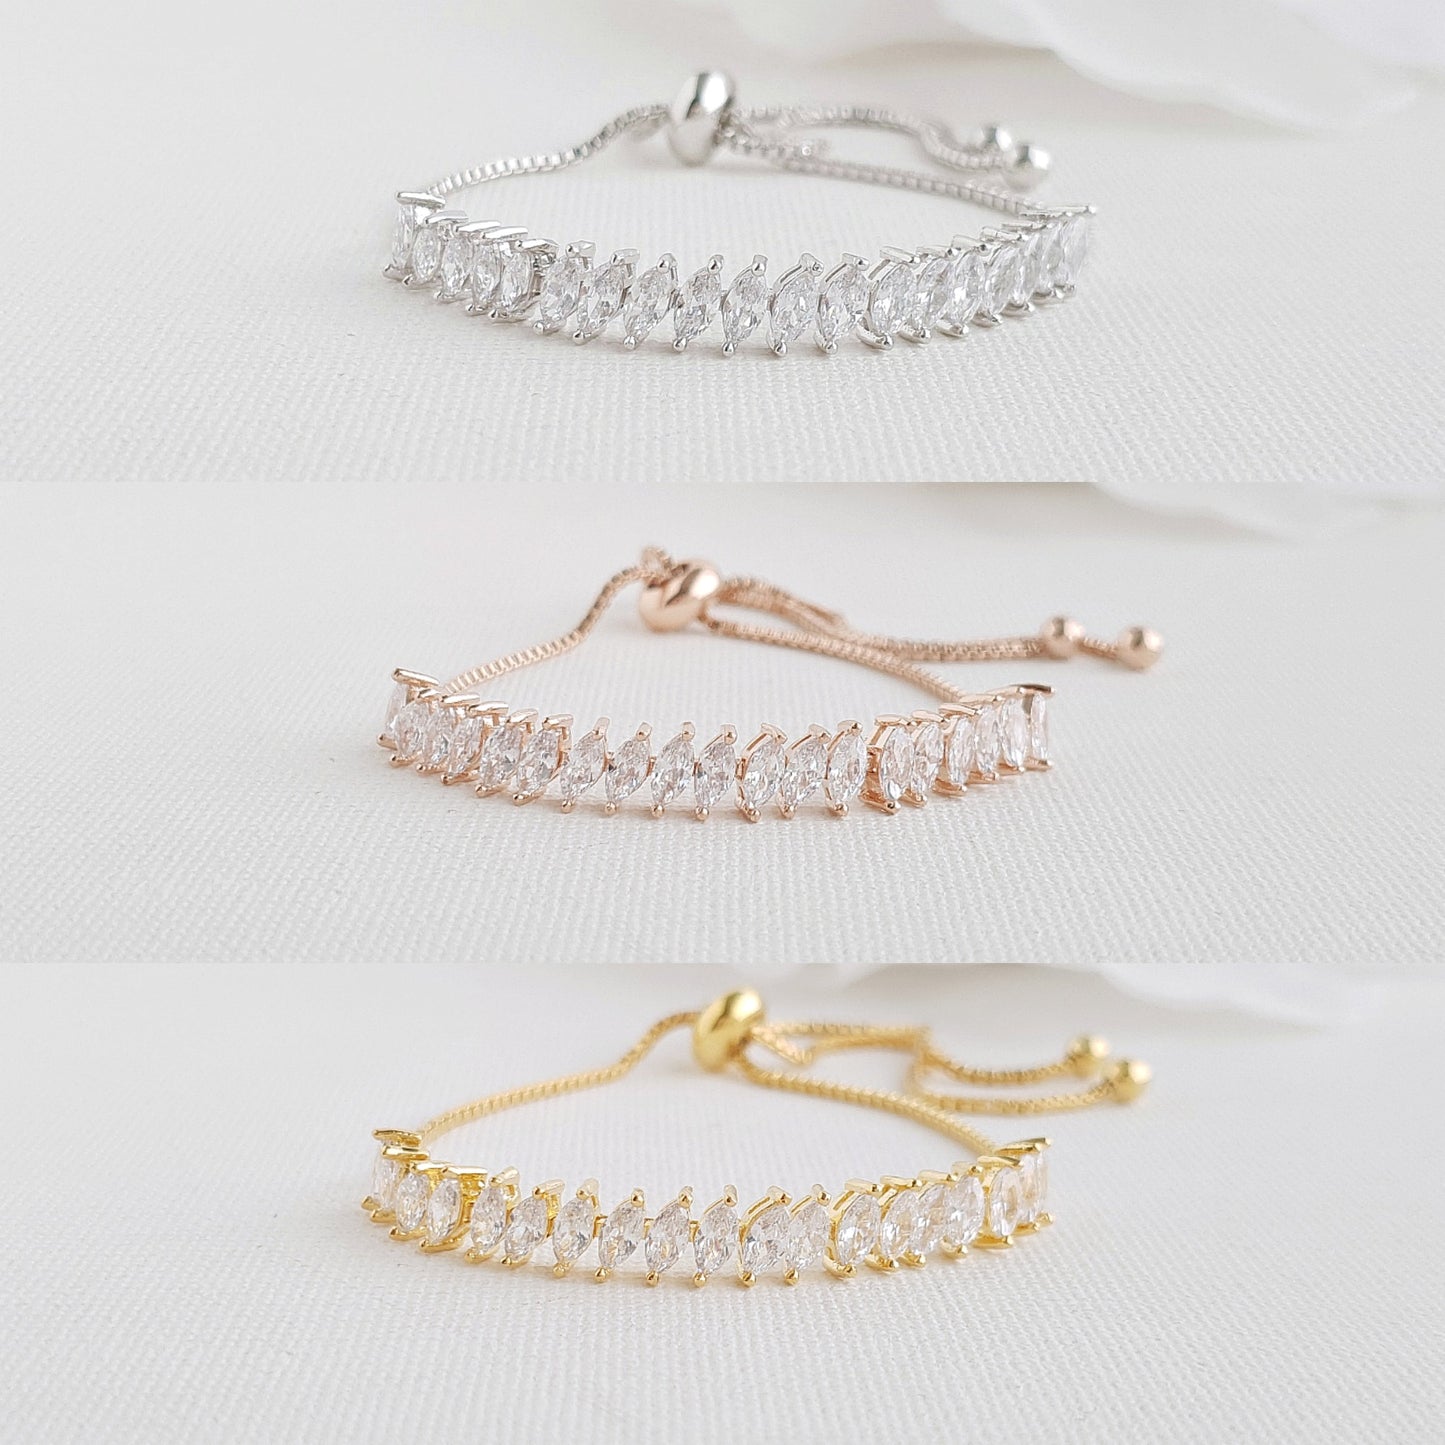 Bridal Gold Bracelet, Gold Crystal Bracelet, Adjustable Bridesmaid Bracelet, Wedding Jewelry, Simple Wedding Bracelet For Bride, Katie